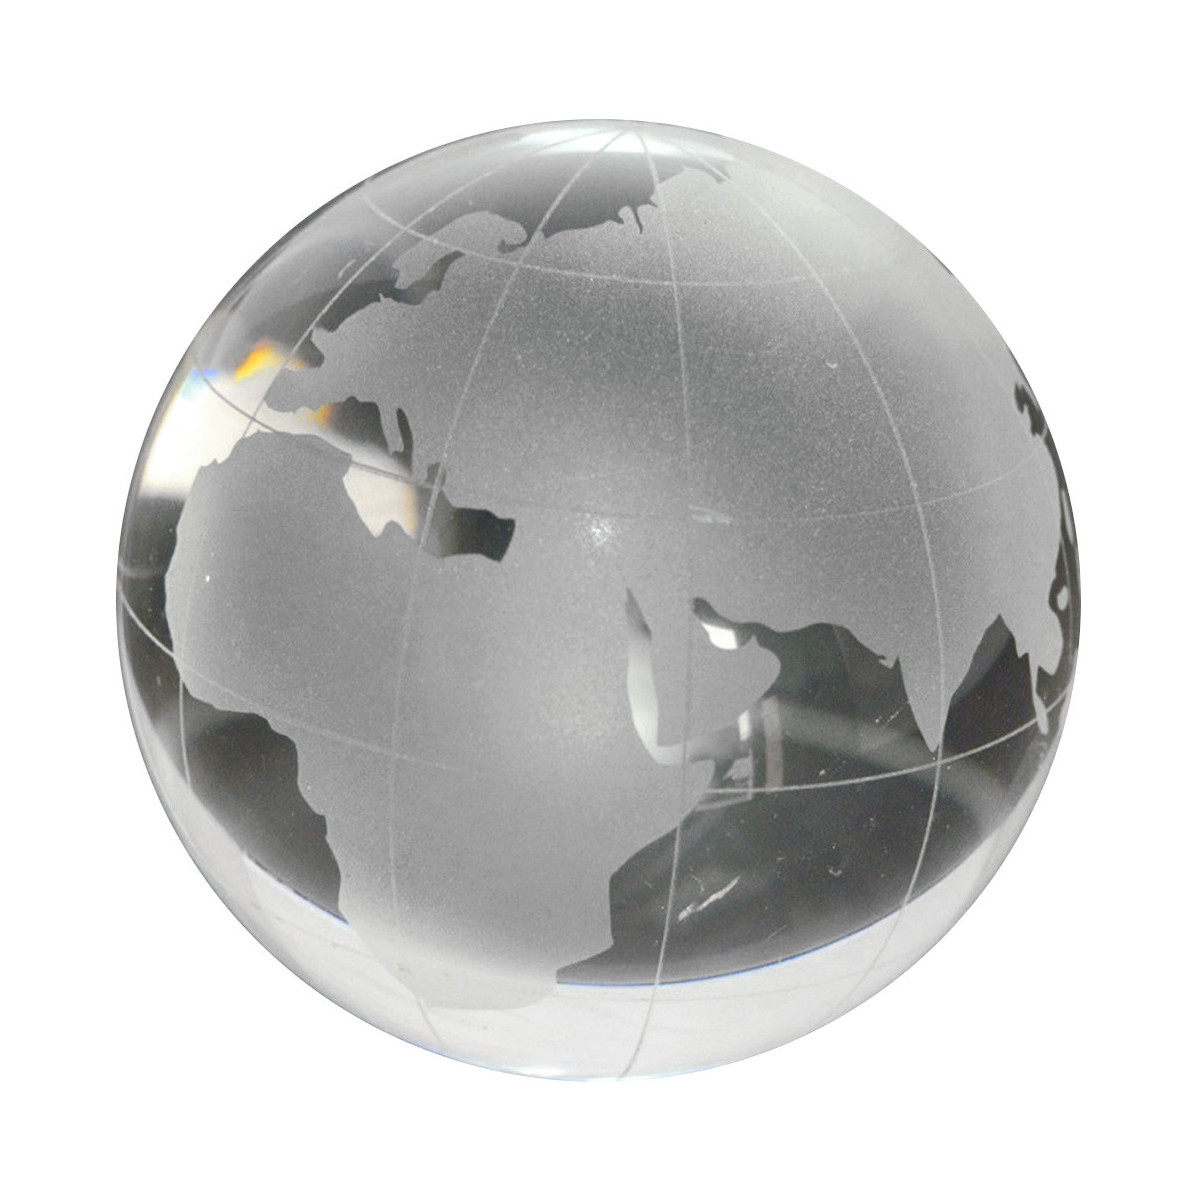 FAGINEY Ronde Terre Globe Carte du Monde Cristal Boule de Verre